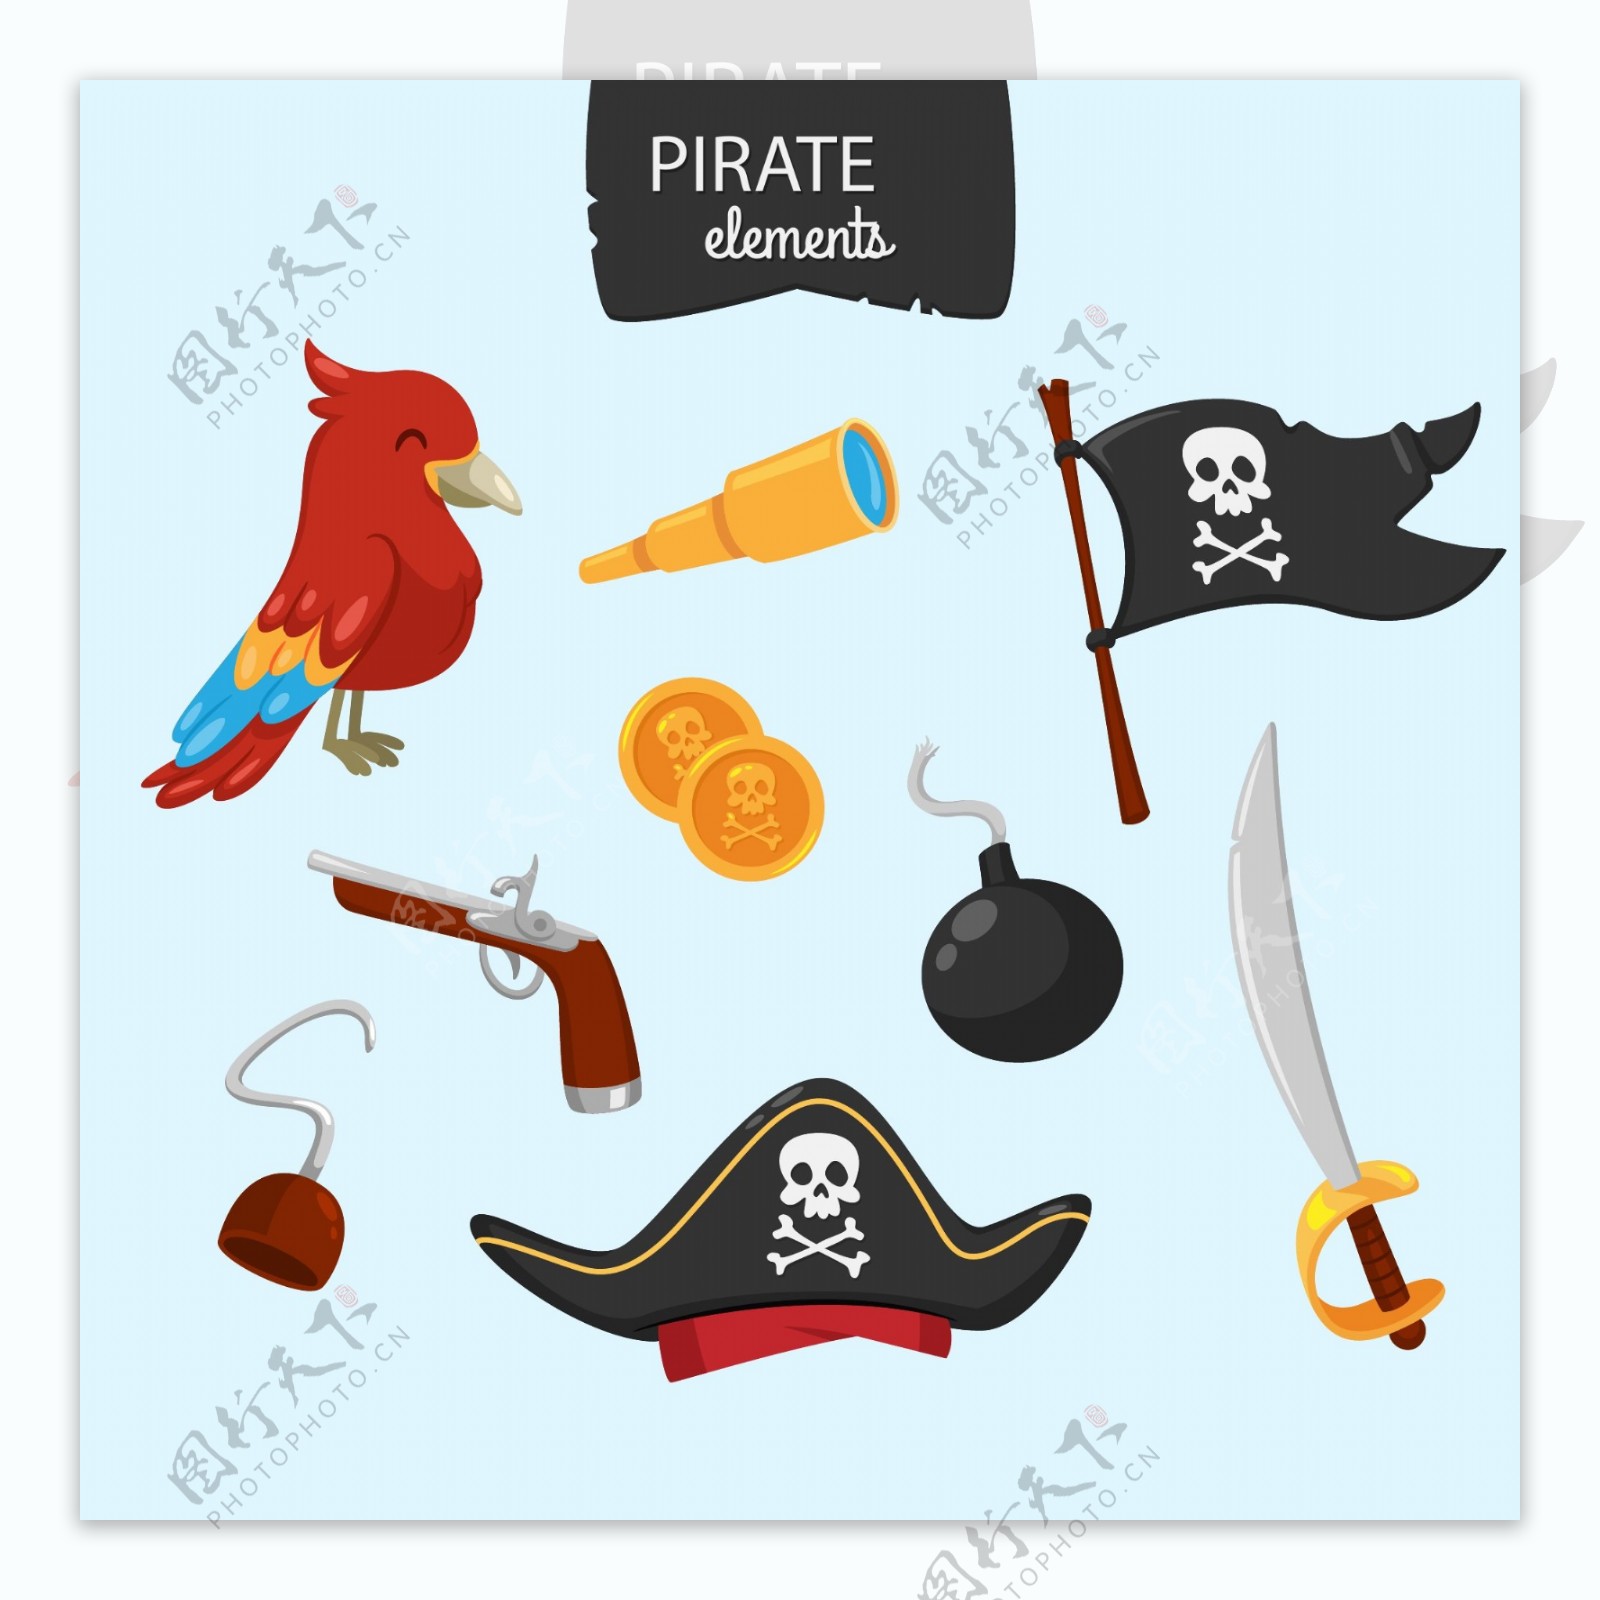 海盗旗和其他元素收藏